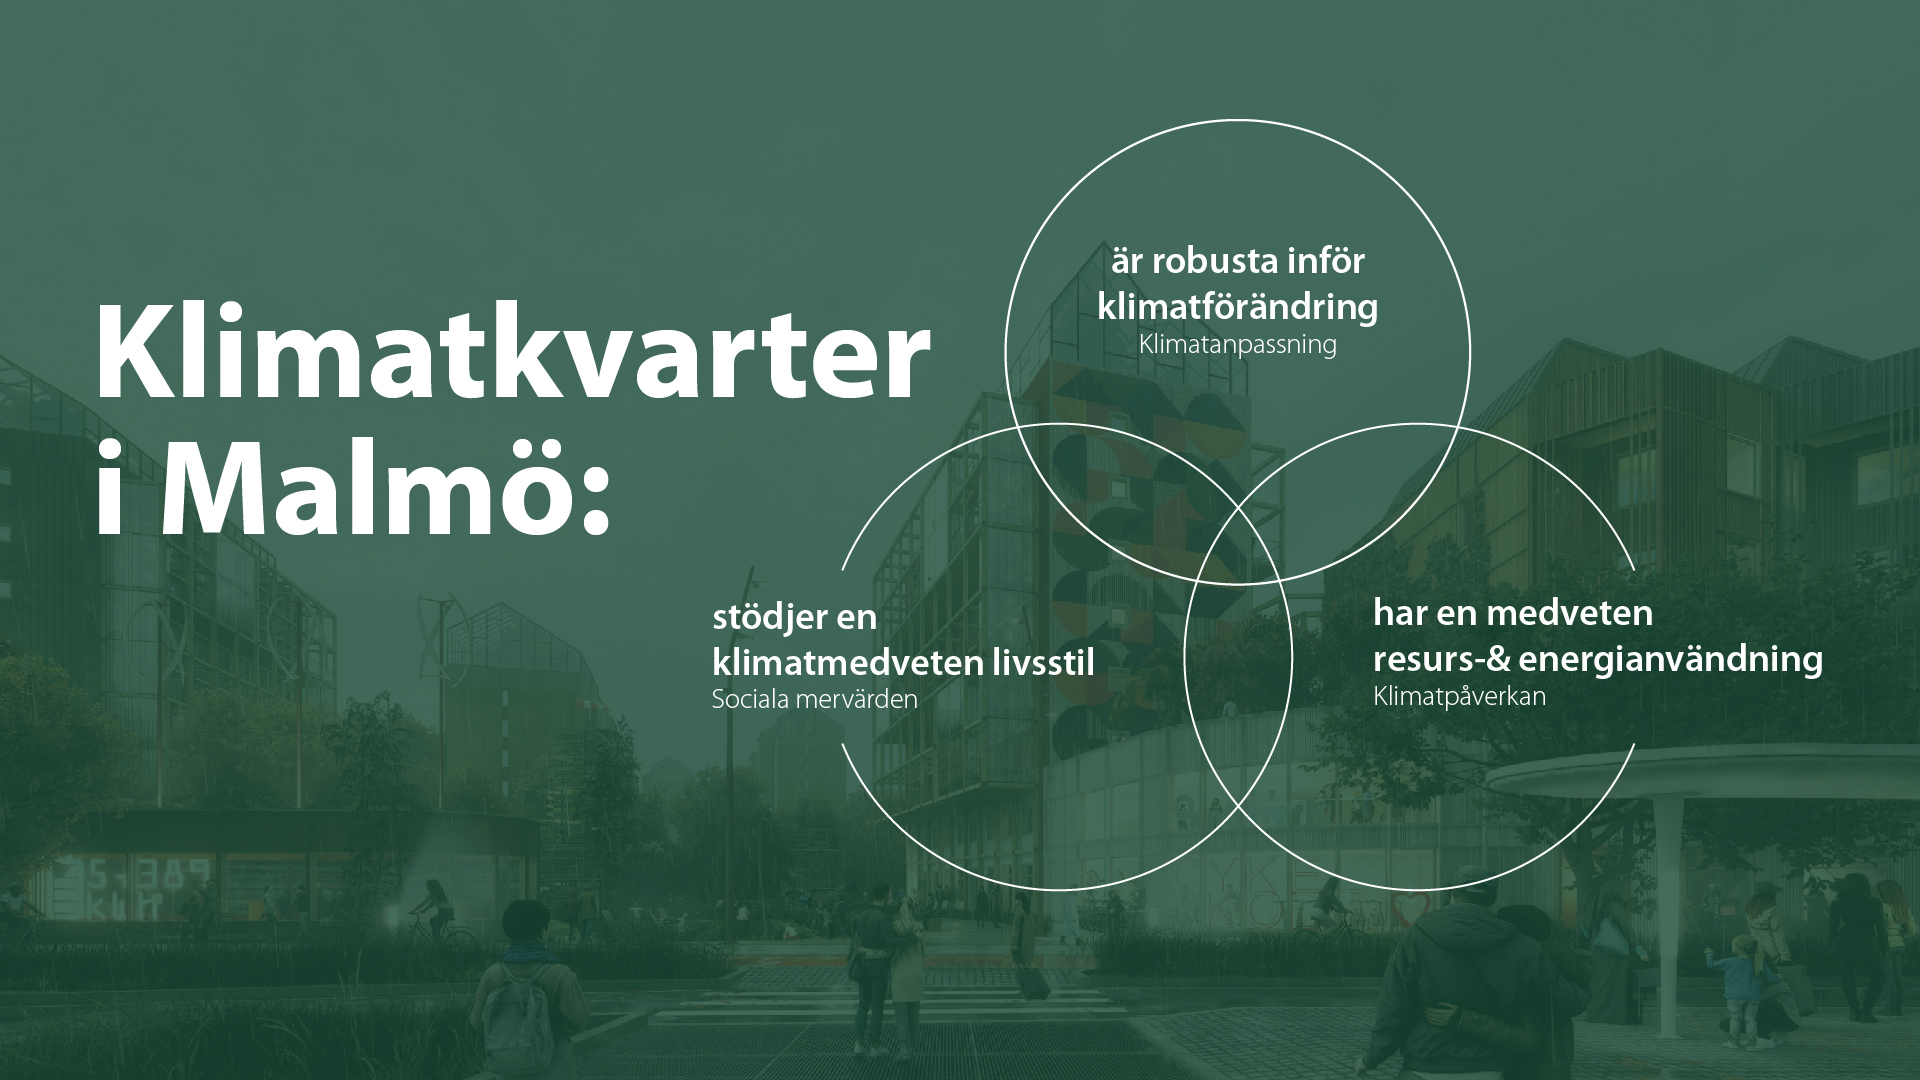 venndiagram över klimatkvarter i Malmös grundkoncept: robusta inför klimatförändring, stödjer en klimatmedveten livsstil och har en medveten resurs-& energianvändning.